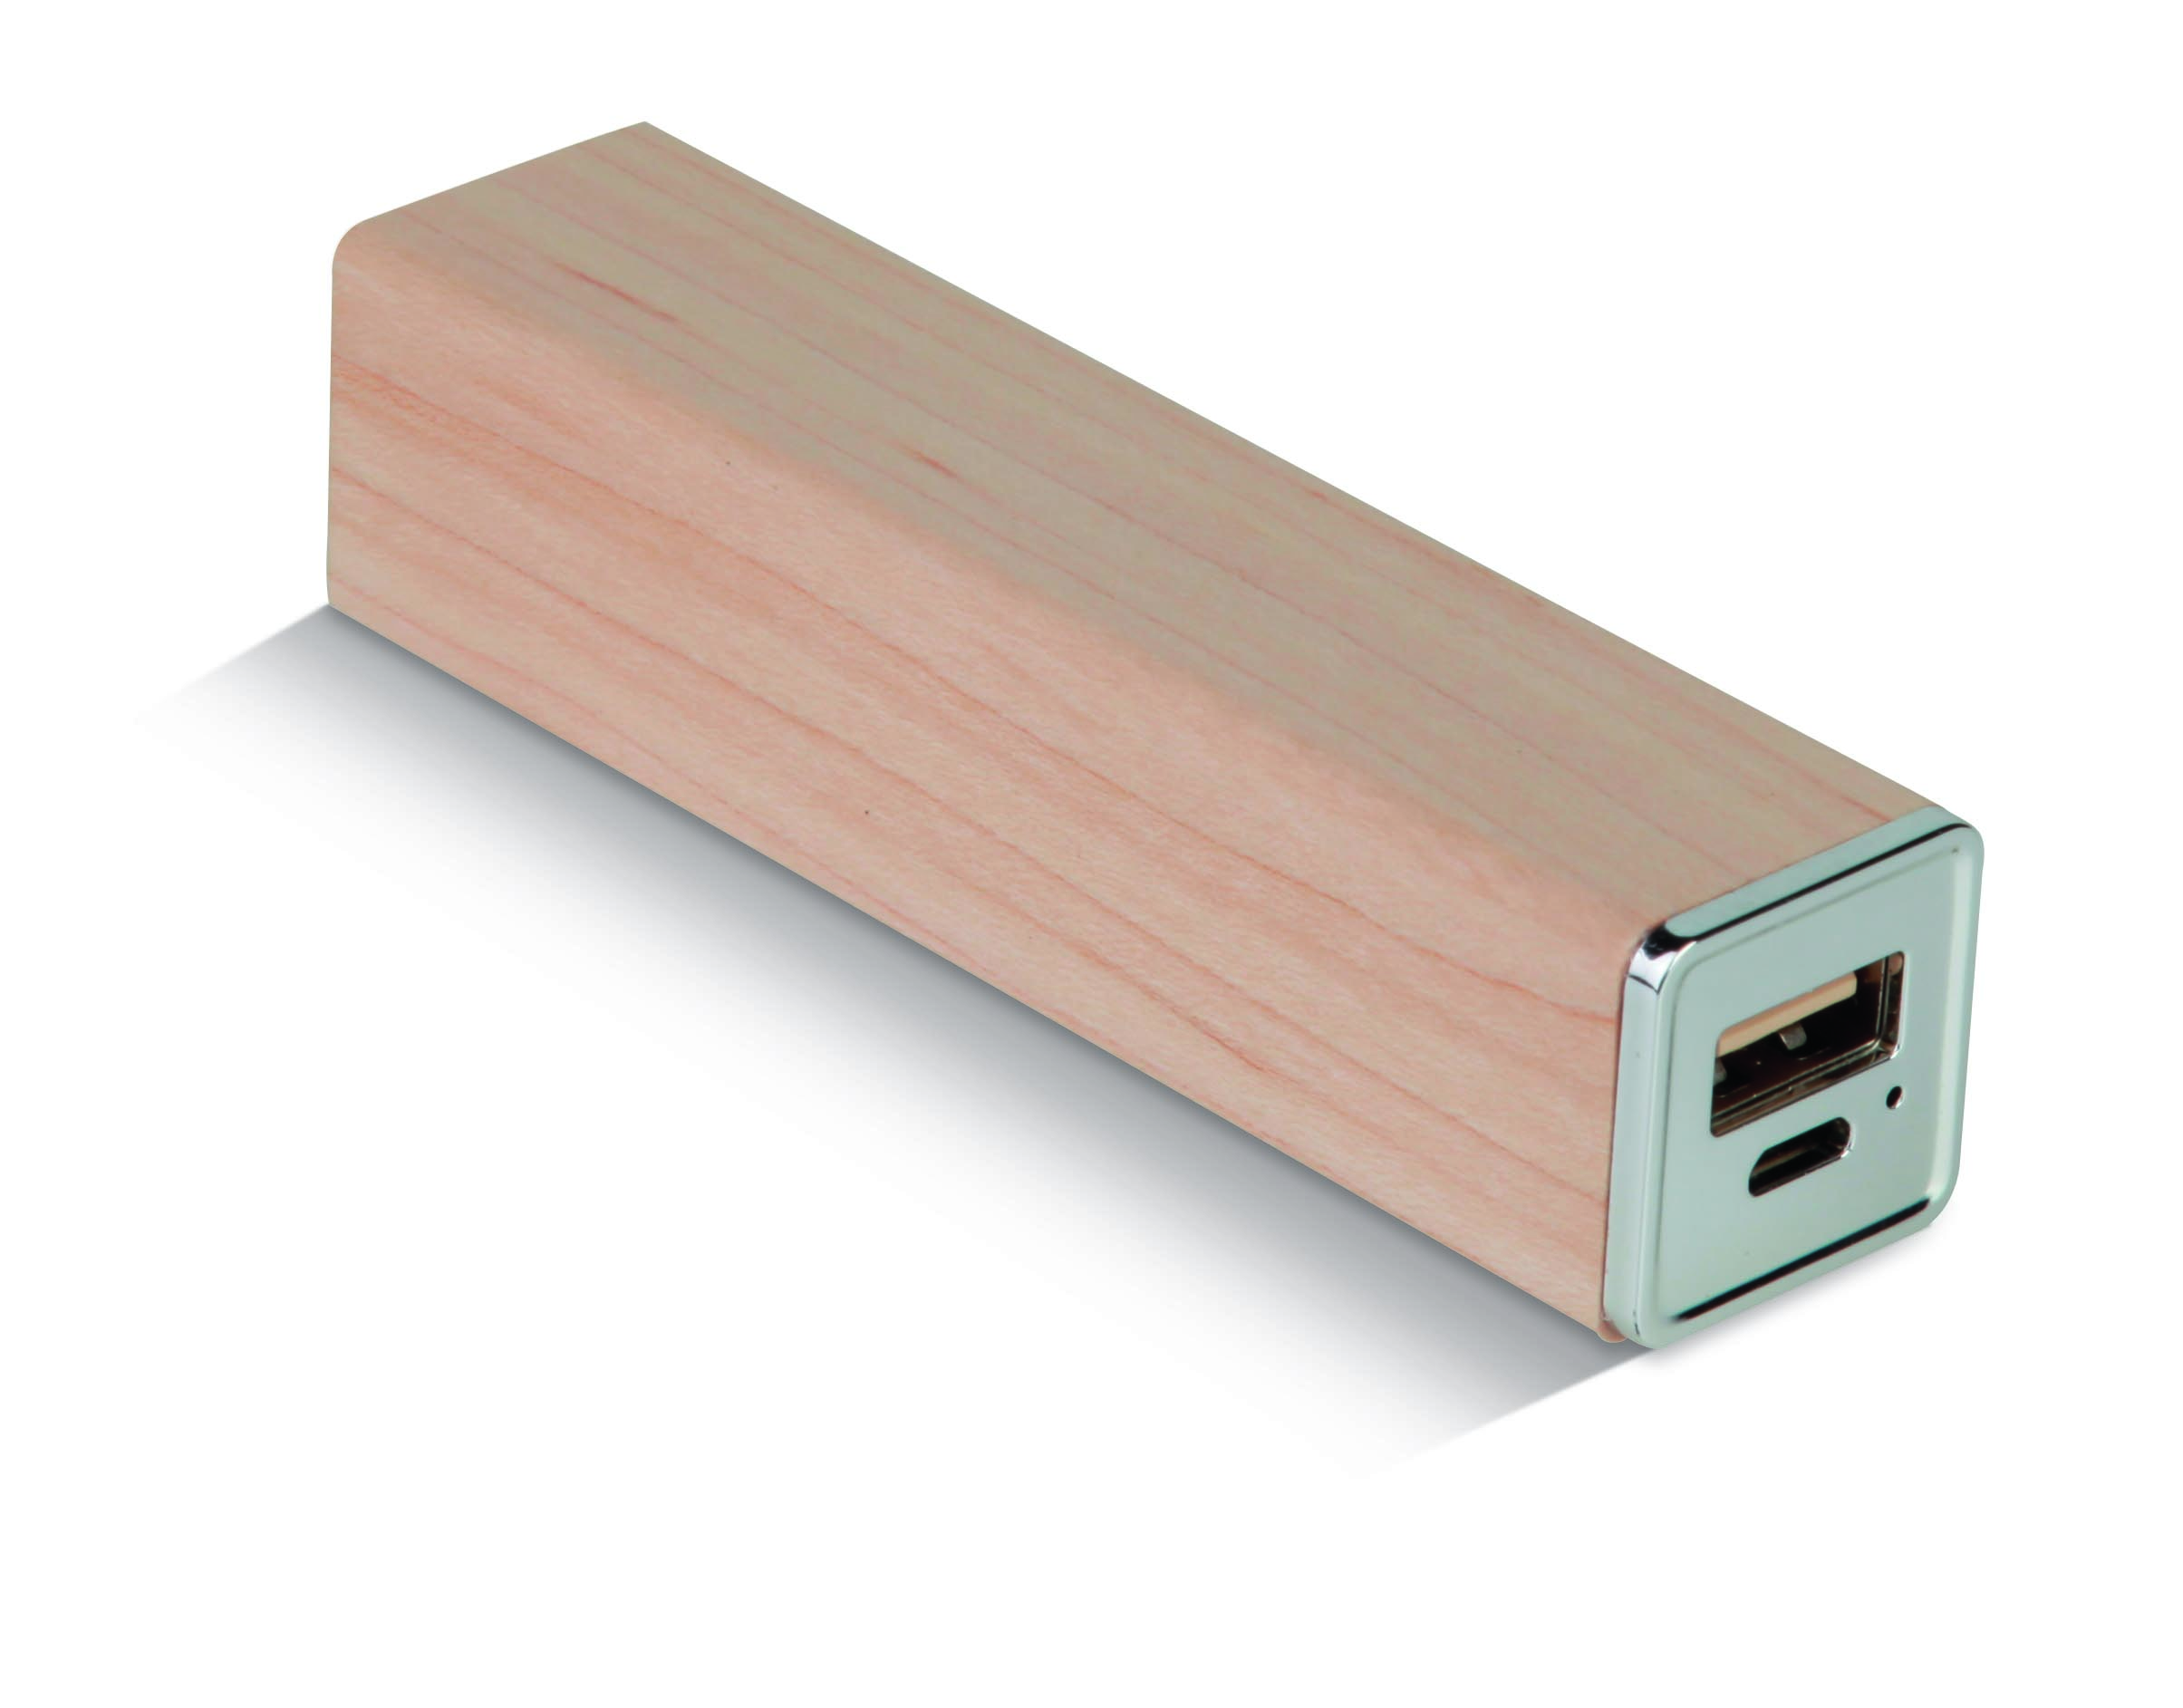 Caricatore USB con finitura in legno